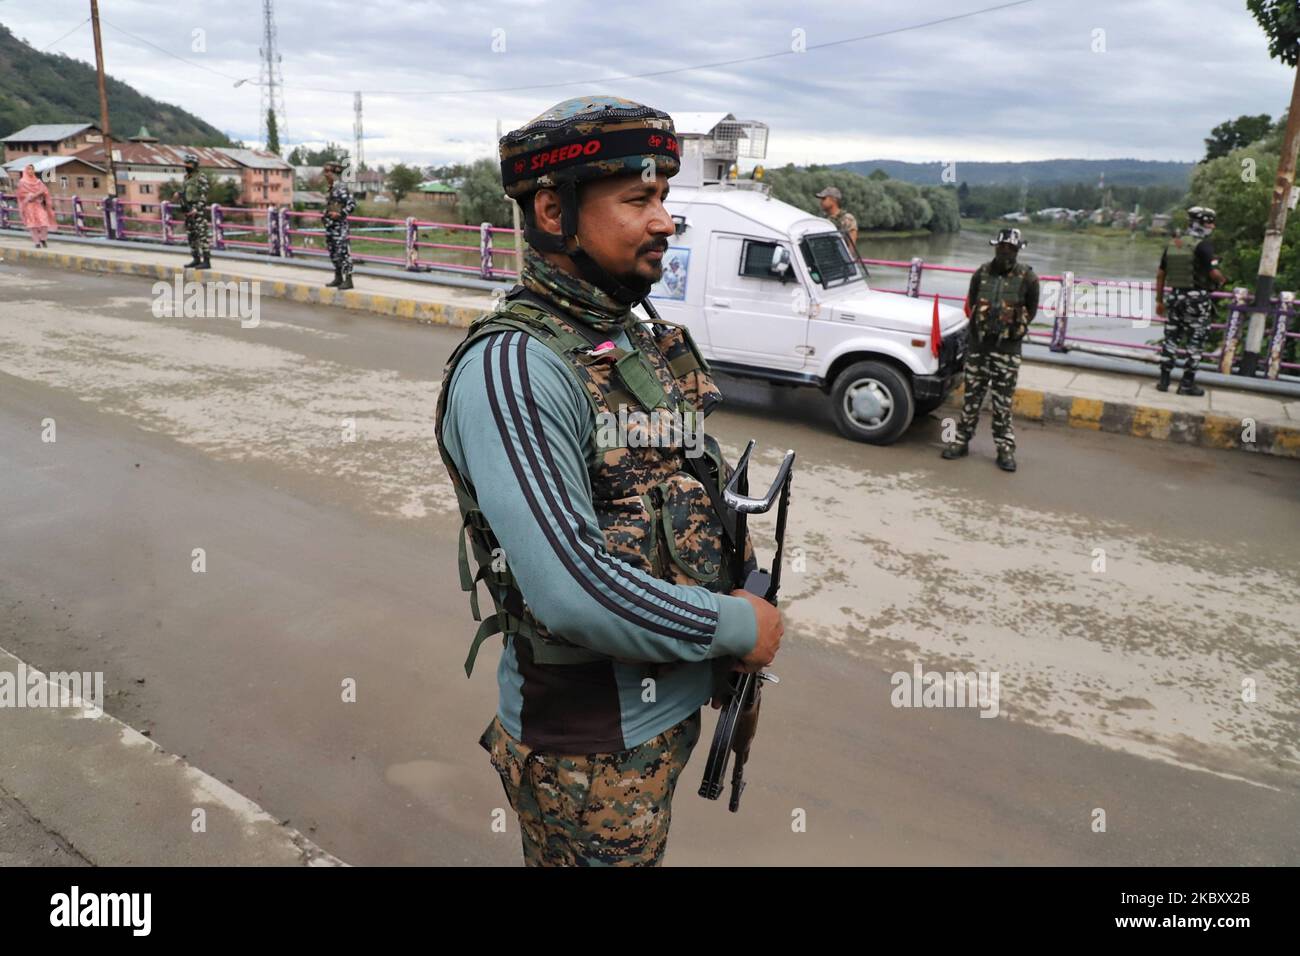 Des militants ont lancé une grenade vers un véhicule de l'armée près de l'ancien hôpital qui a manqué la cible et a explosé sur la route blessant six civils le 31 août 2020, l'armée a par la suite lancé une opération de recherche dans la région (photo de Nasir Kachroo/NurPhoto) Banque D'Images